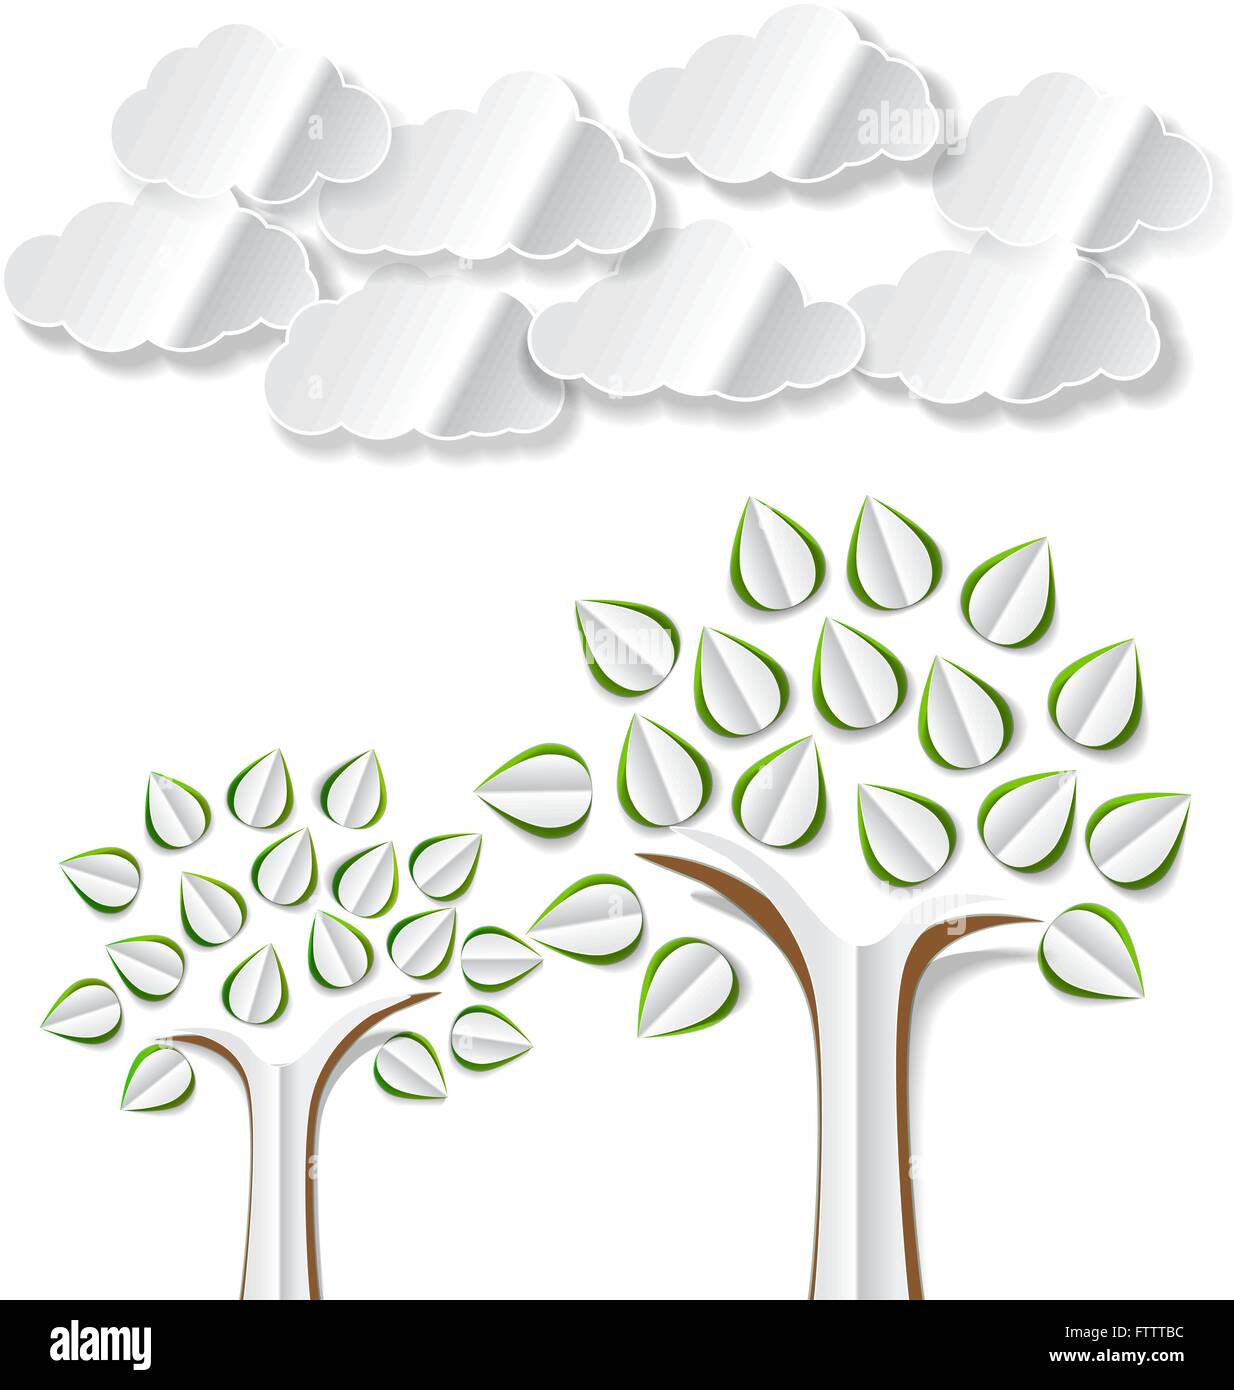 Image conceptuelle avec résumé communication arbres et nuages découper sur fond blanc. Vector illustration avec arbres résumé communication Illustration de Vecteur